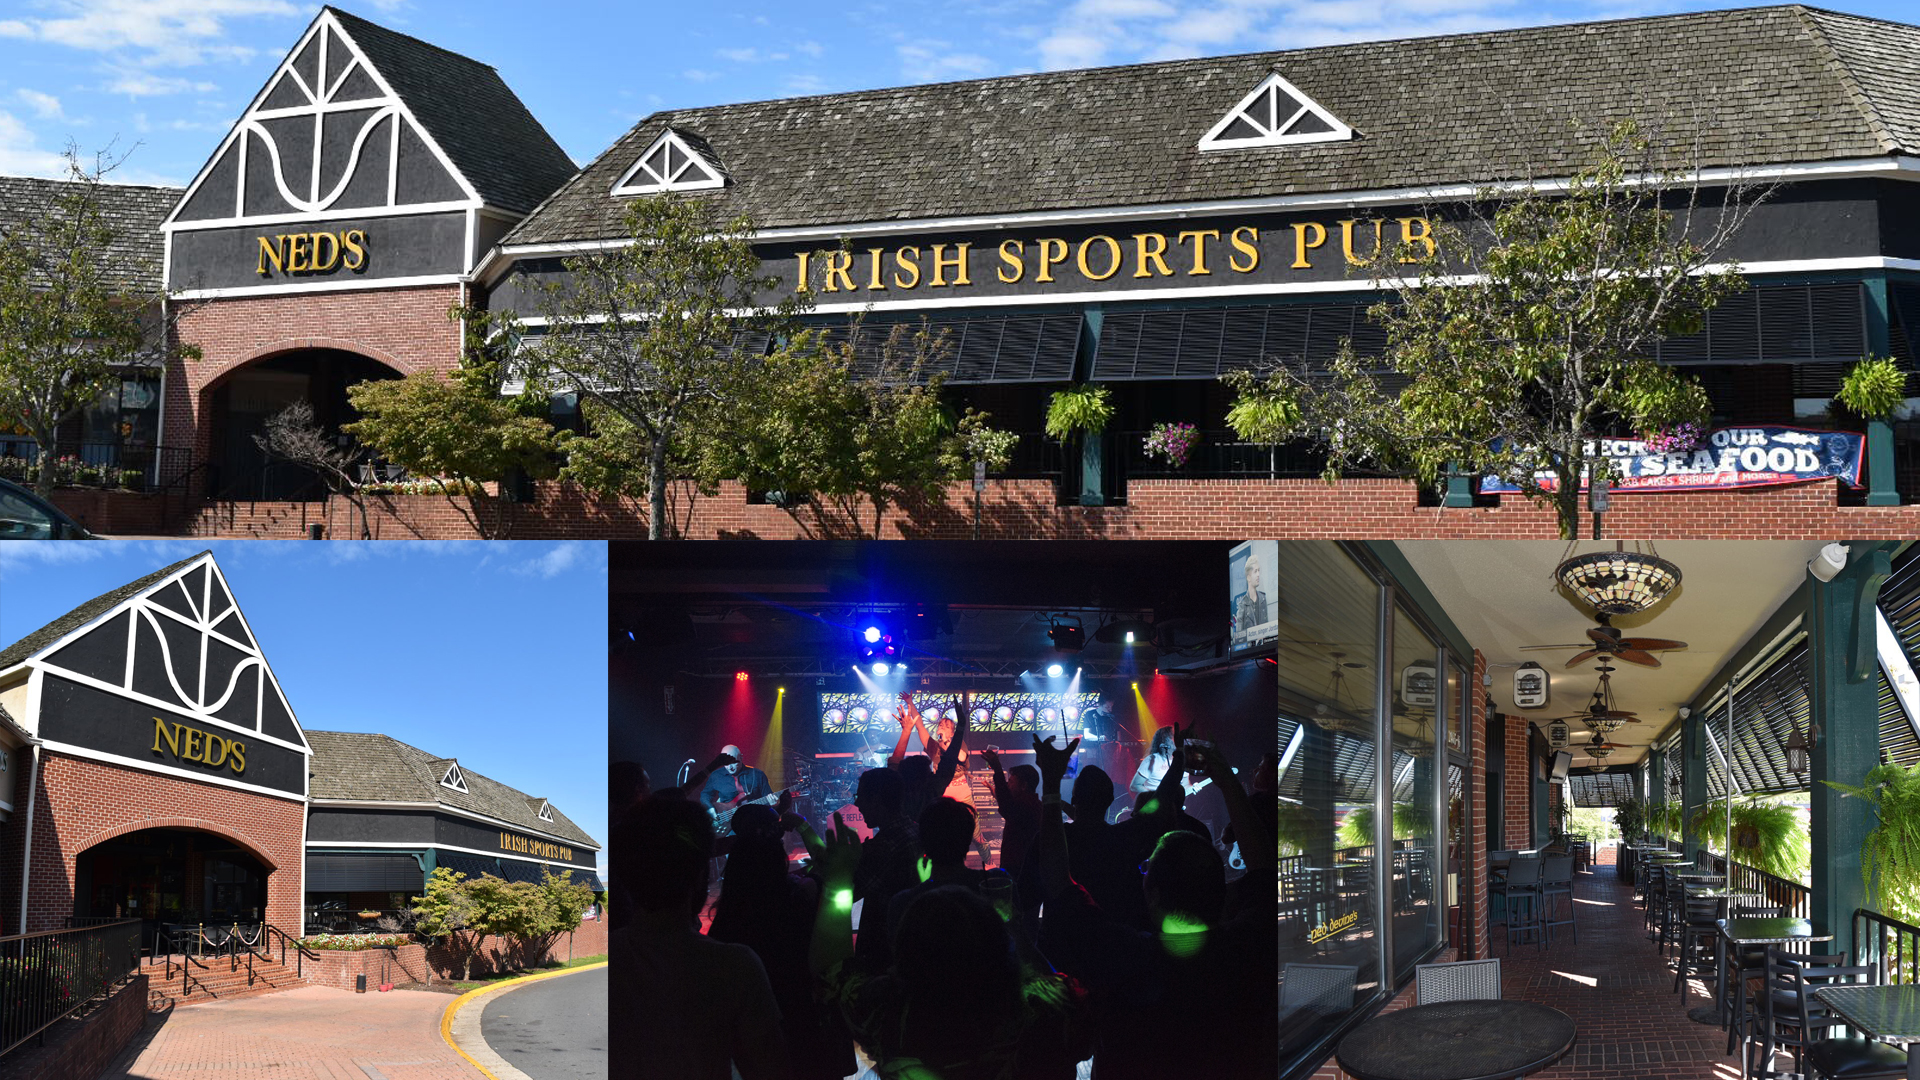 Ned's Irish Sports Pub